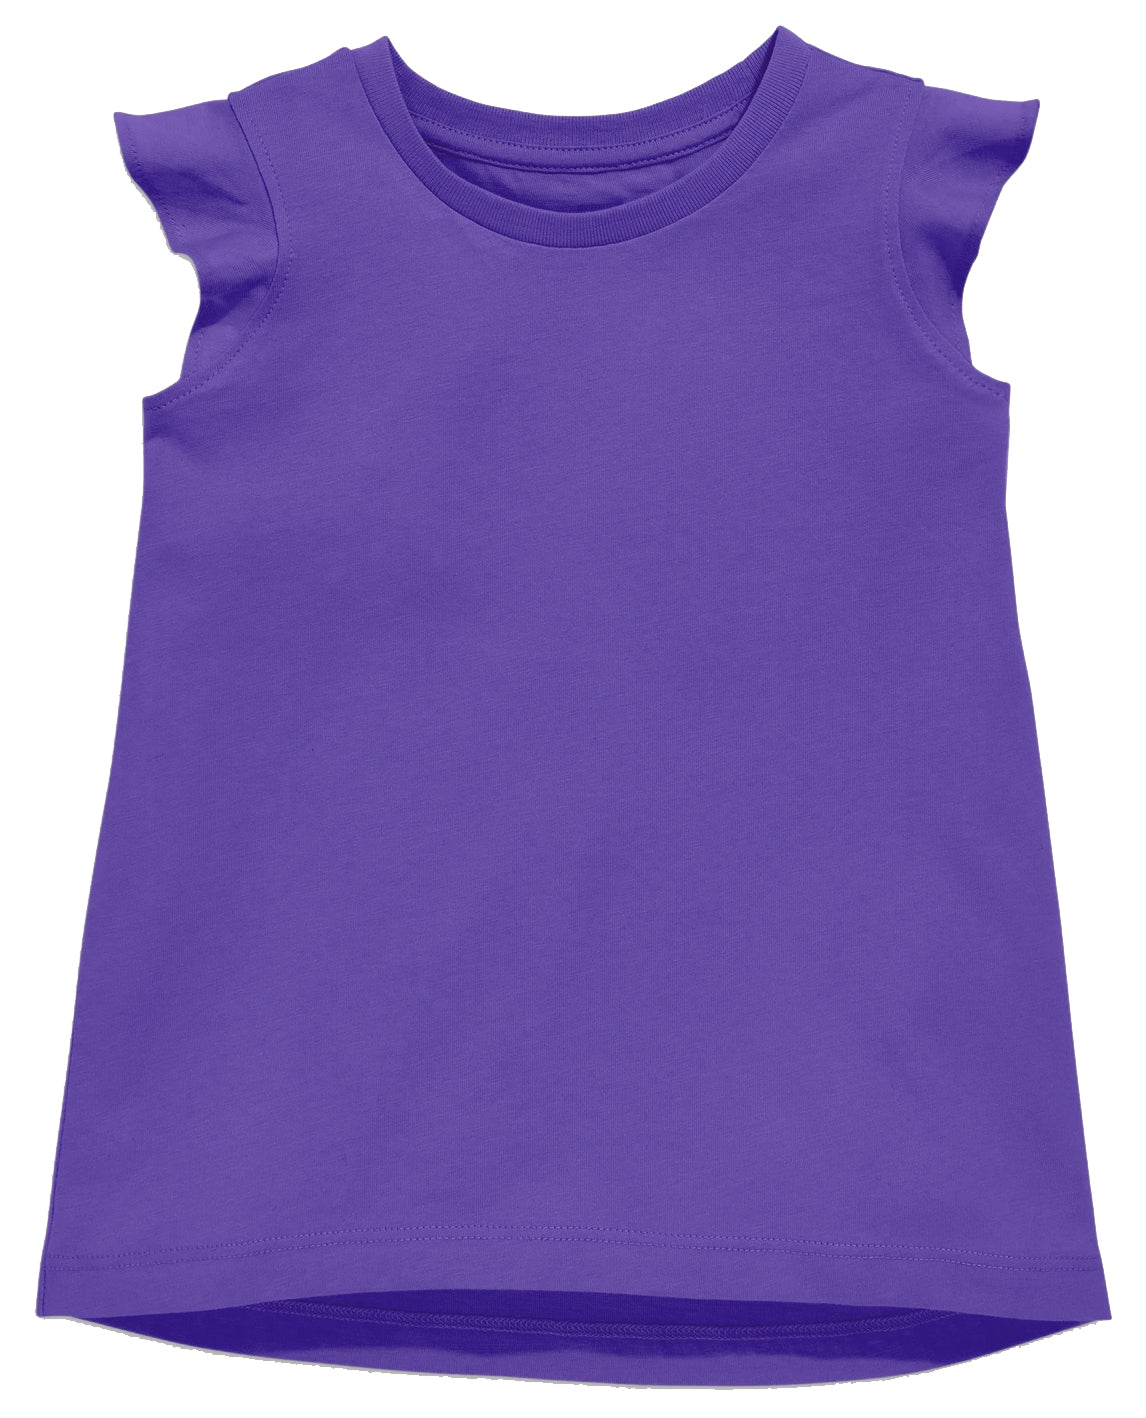 Ruffle Shirt in Purple